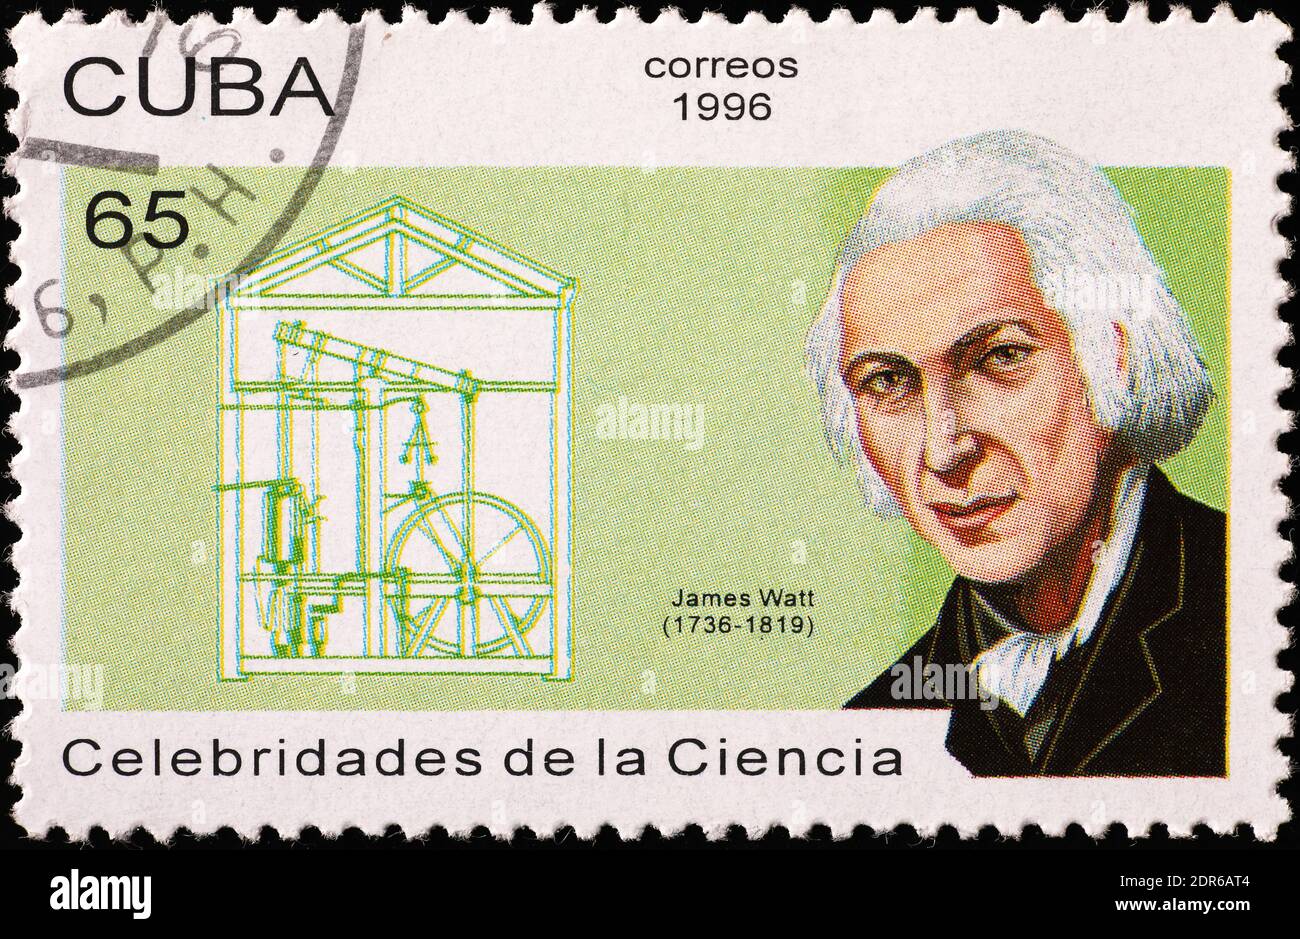 James Watt sur timbre-poste cubain Banque D'Images